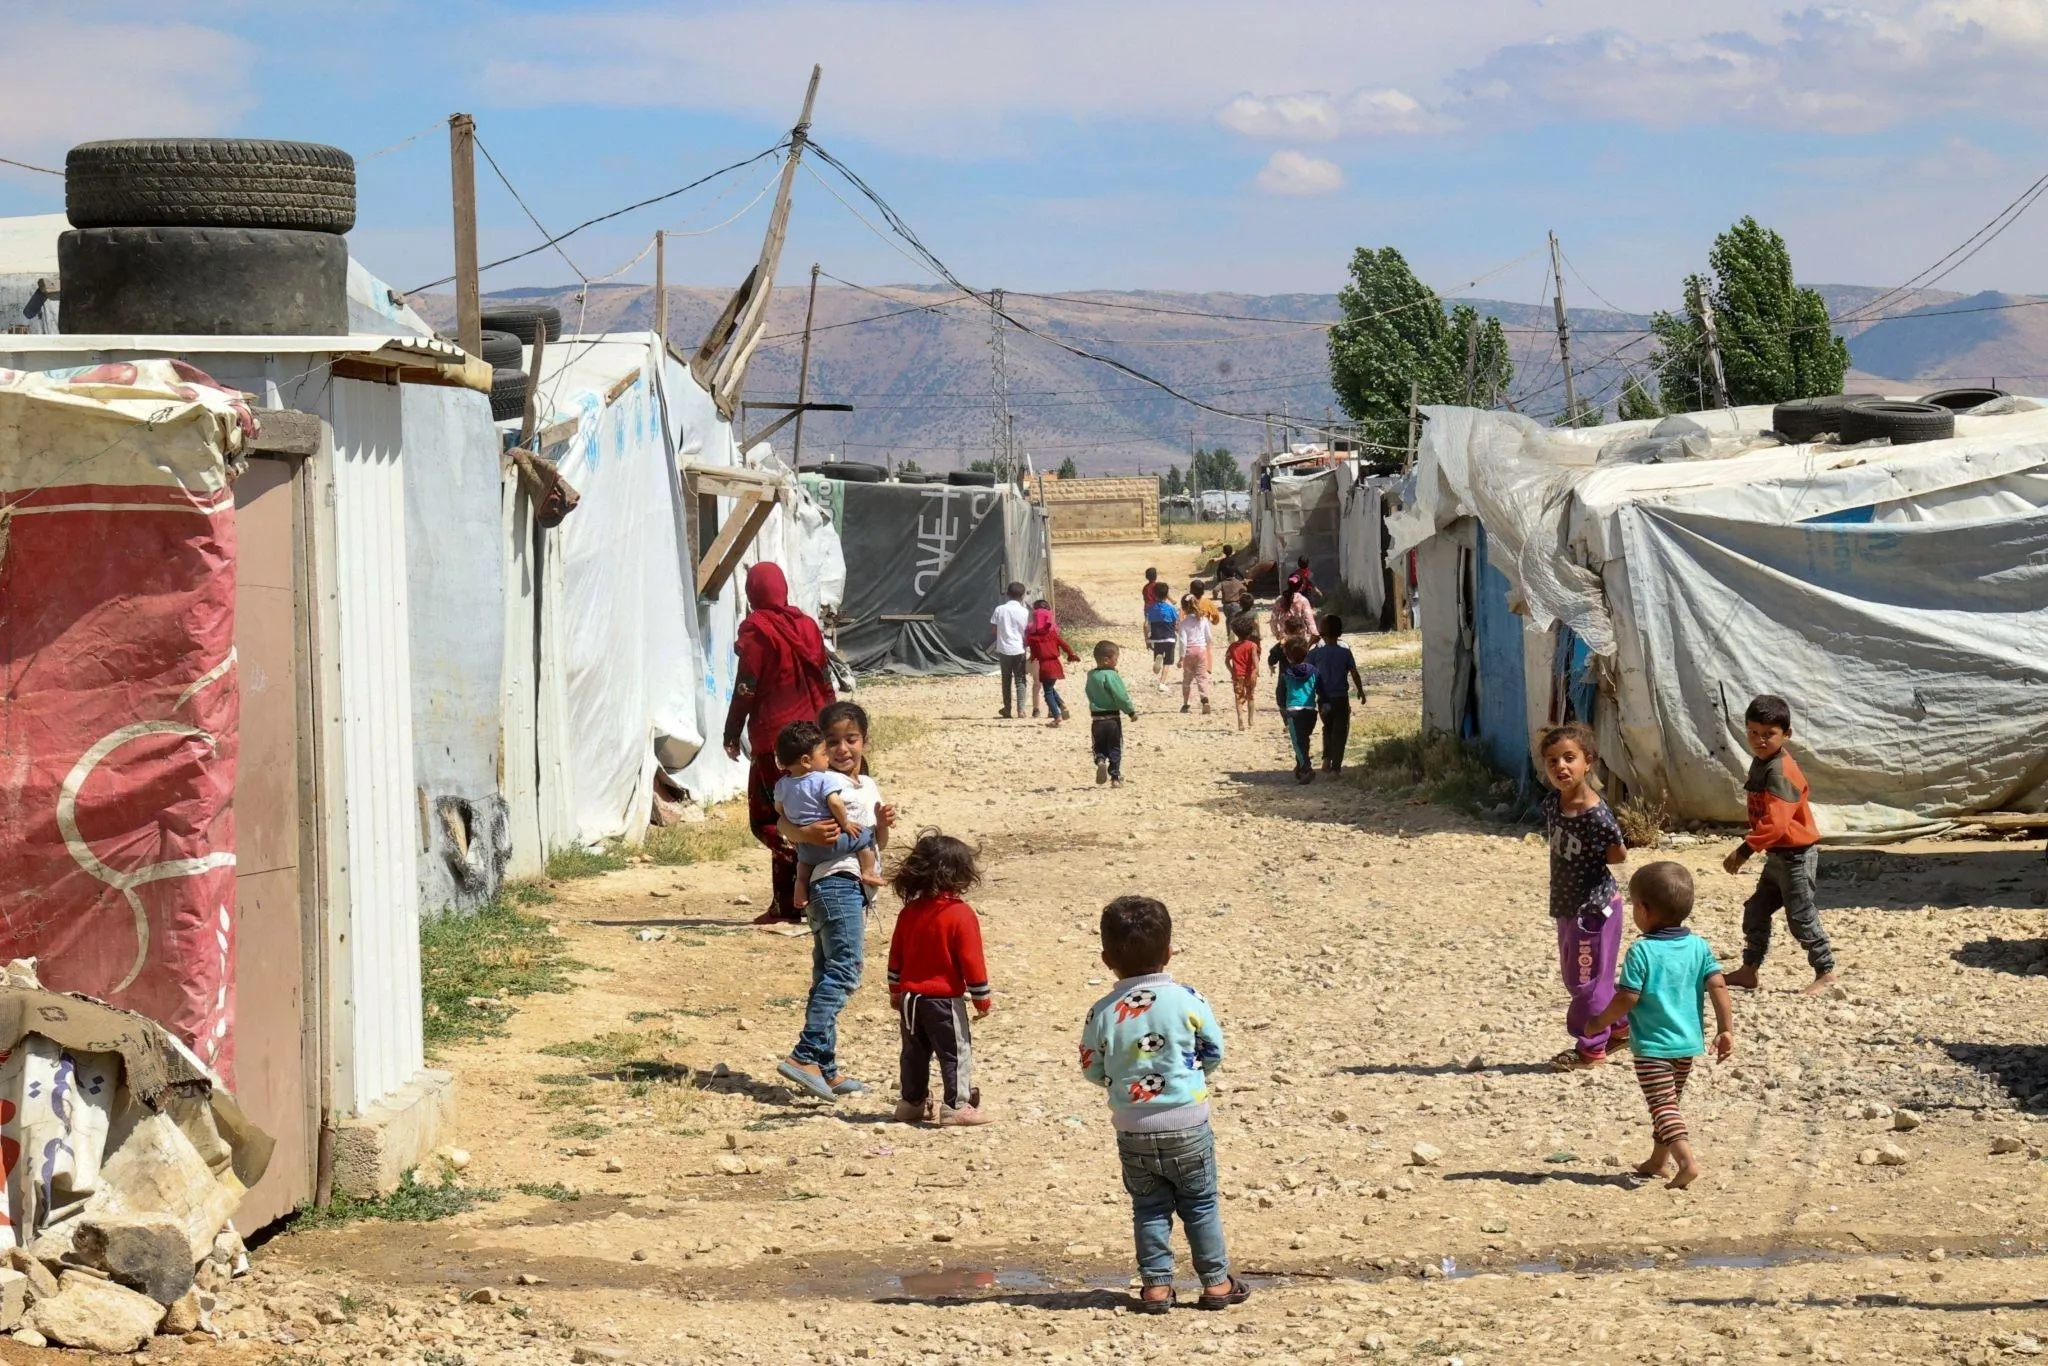 حجار: حكومة لبنان اتخذت قراراً بعدم توسيع مخيمات السوريين أو إقامة مخيمات جديدة لهم